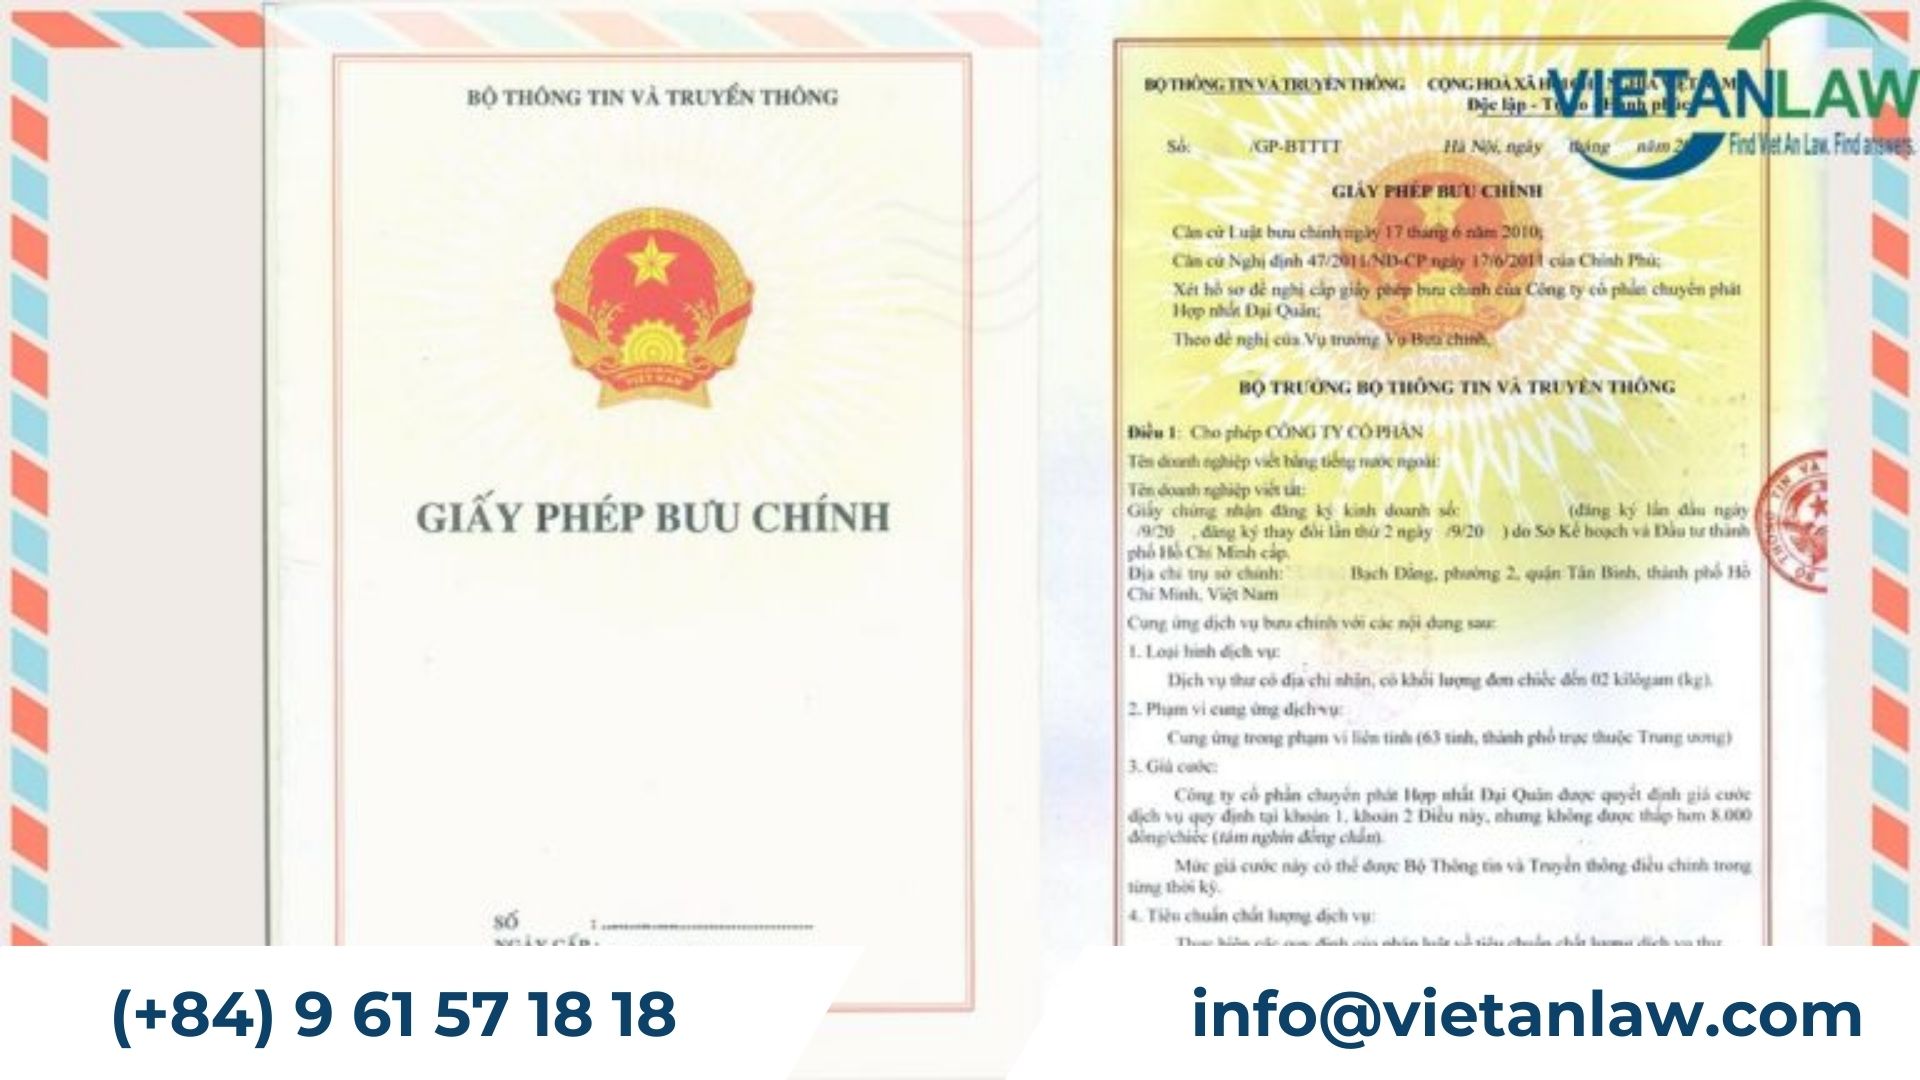 Postal license in Vietnam